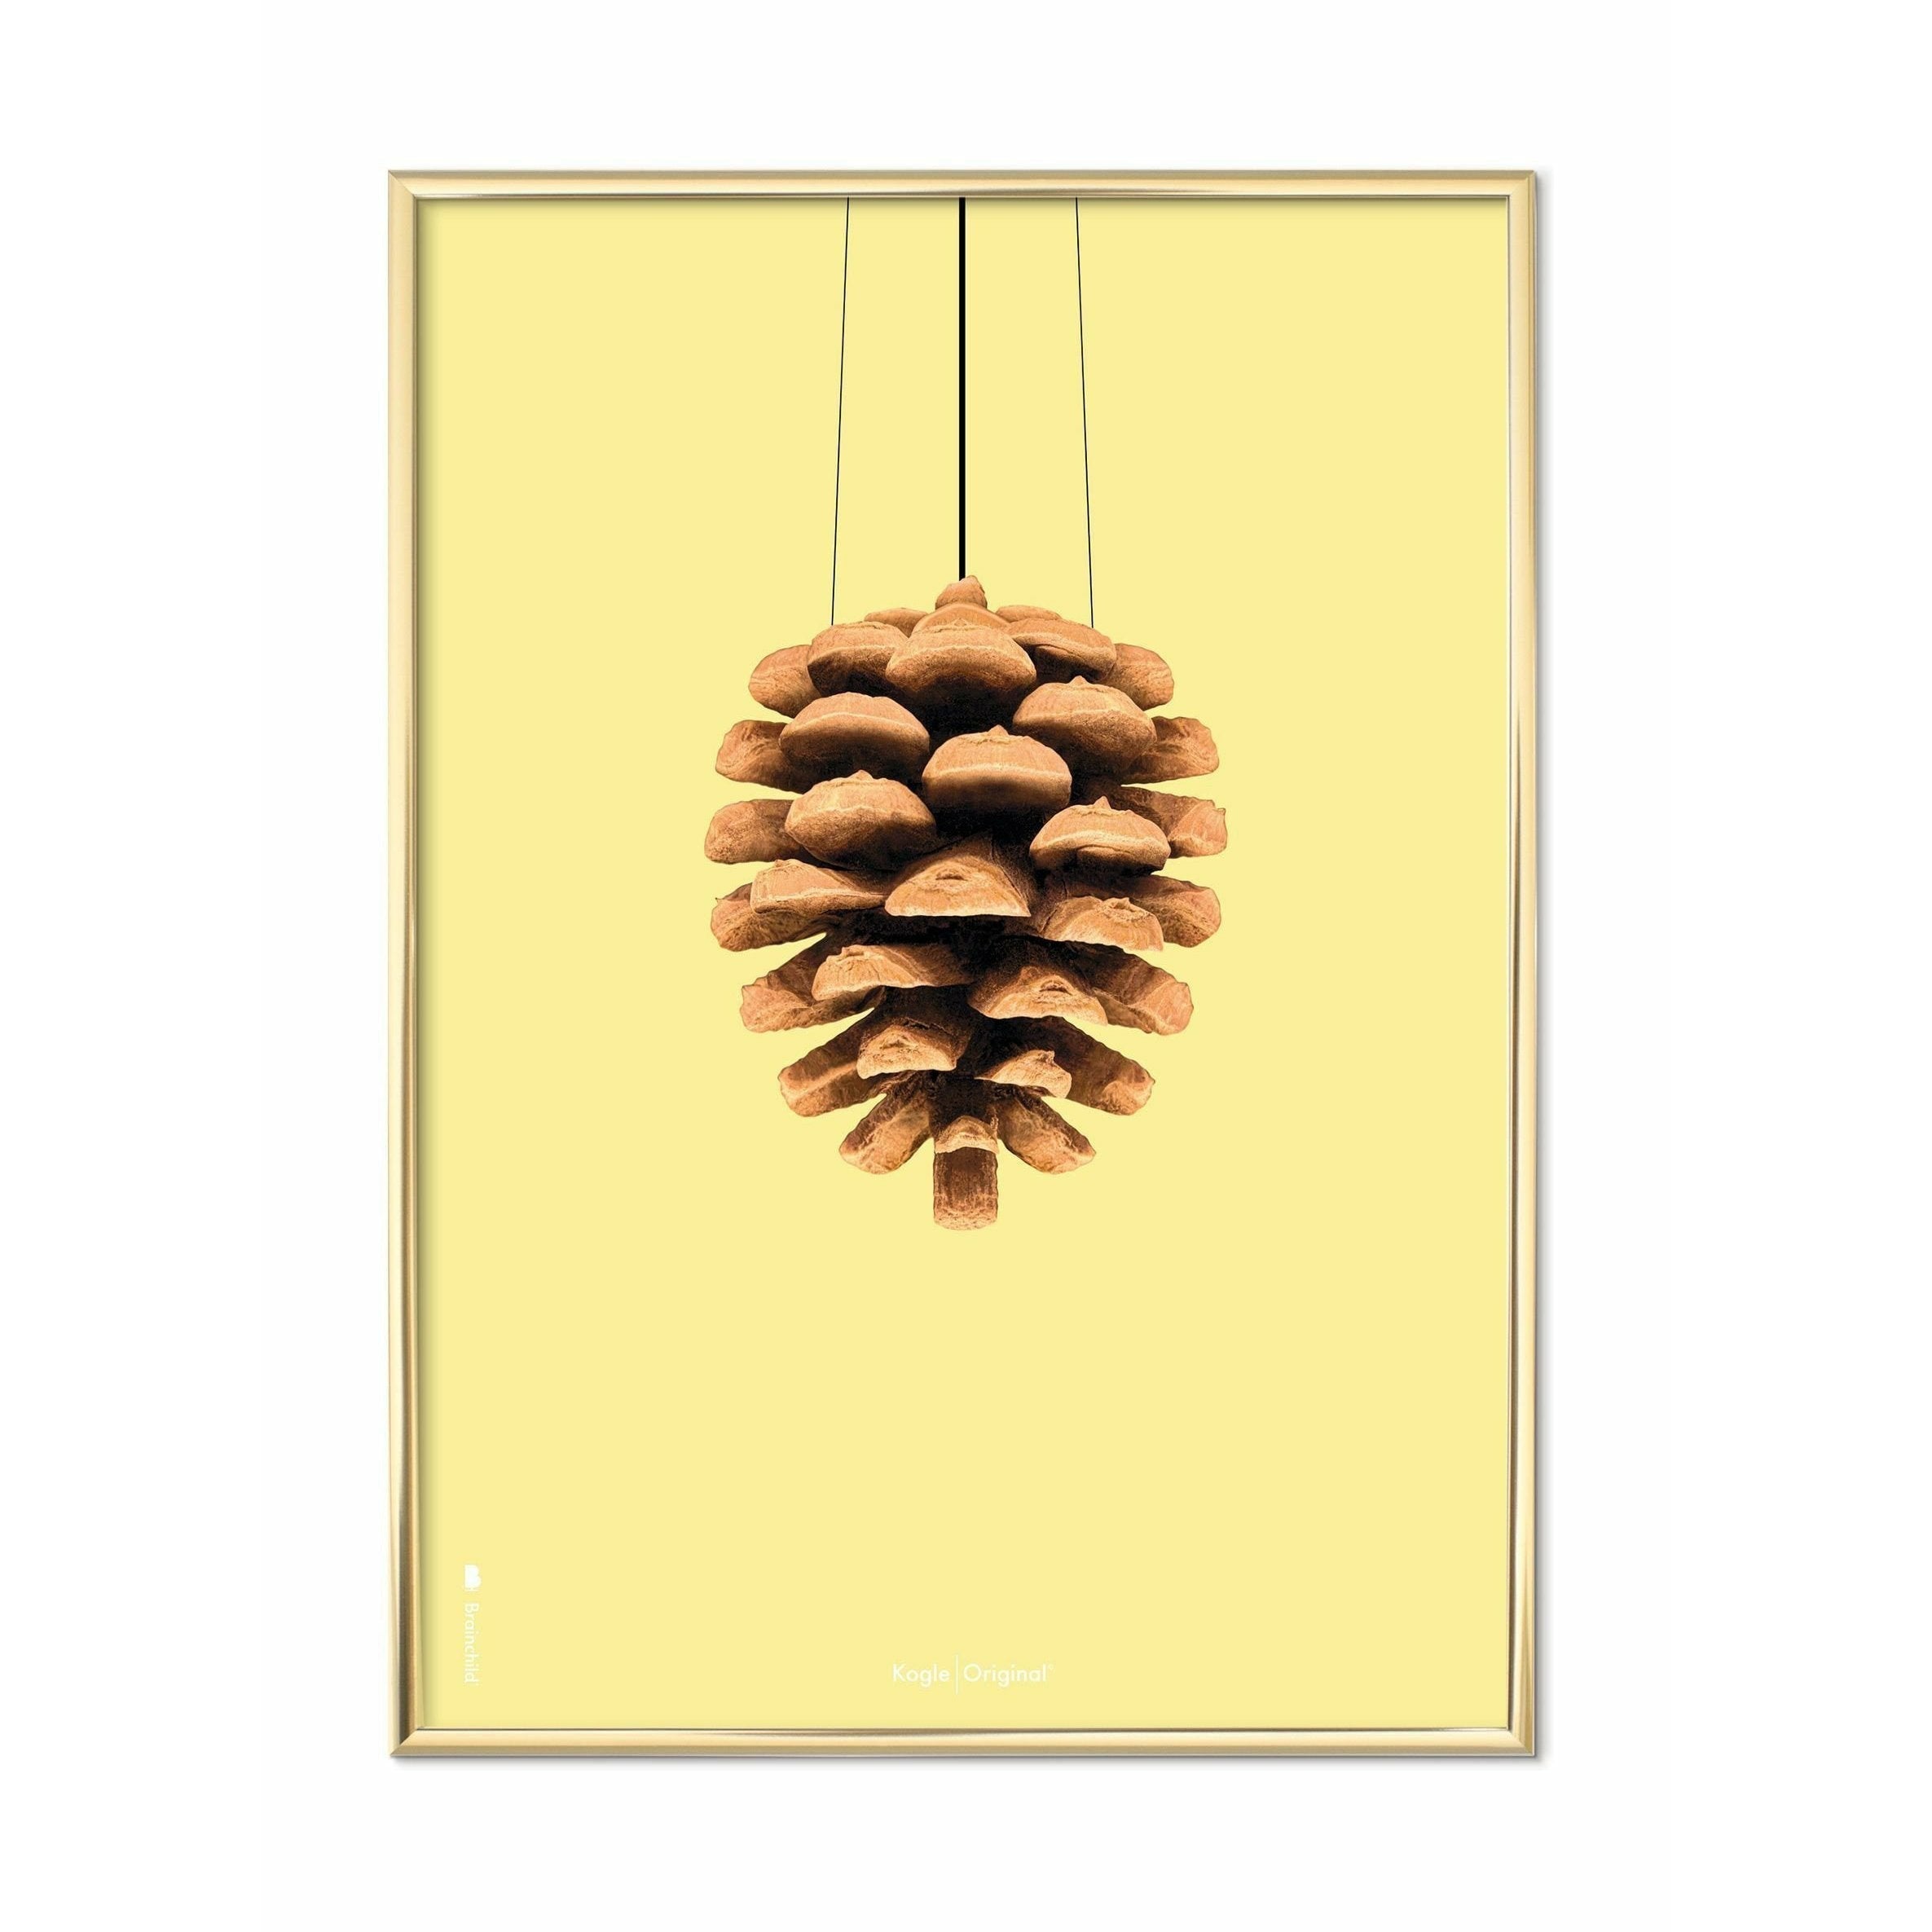 Póster clásico de Pine Cone de Brainchild, marco de latón 50x70 cm, fondo amarillo